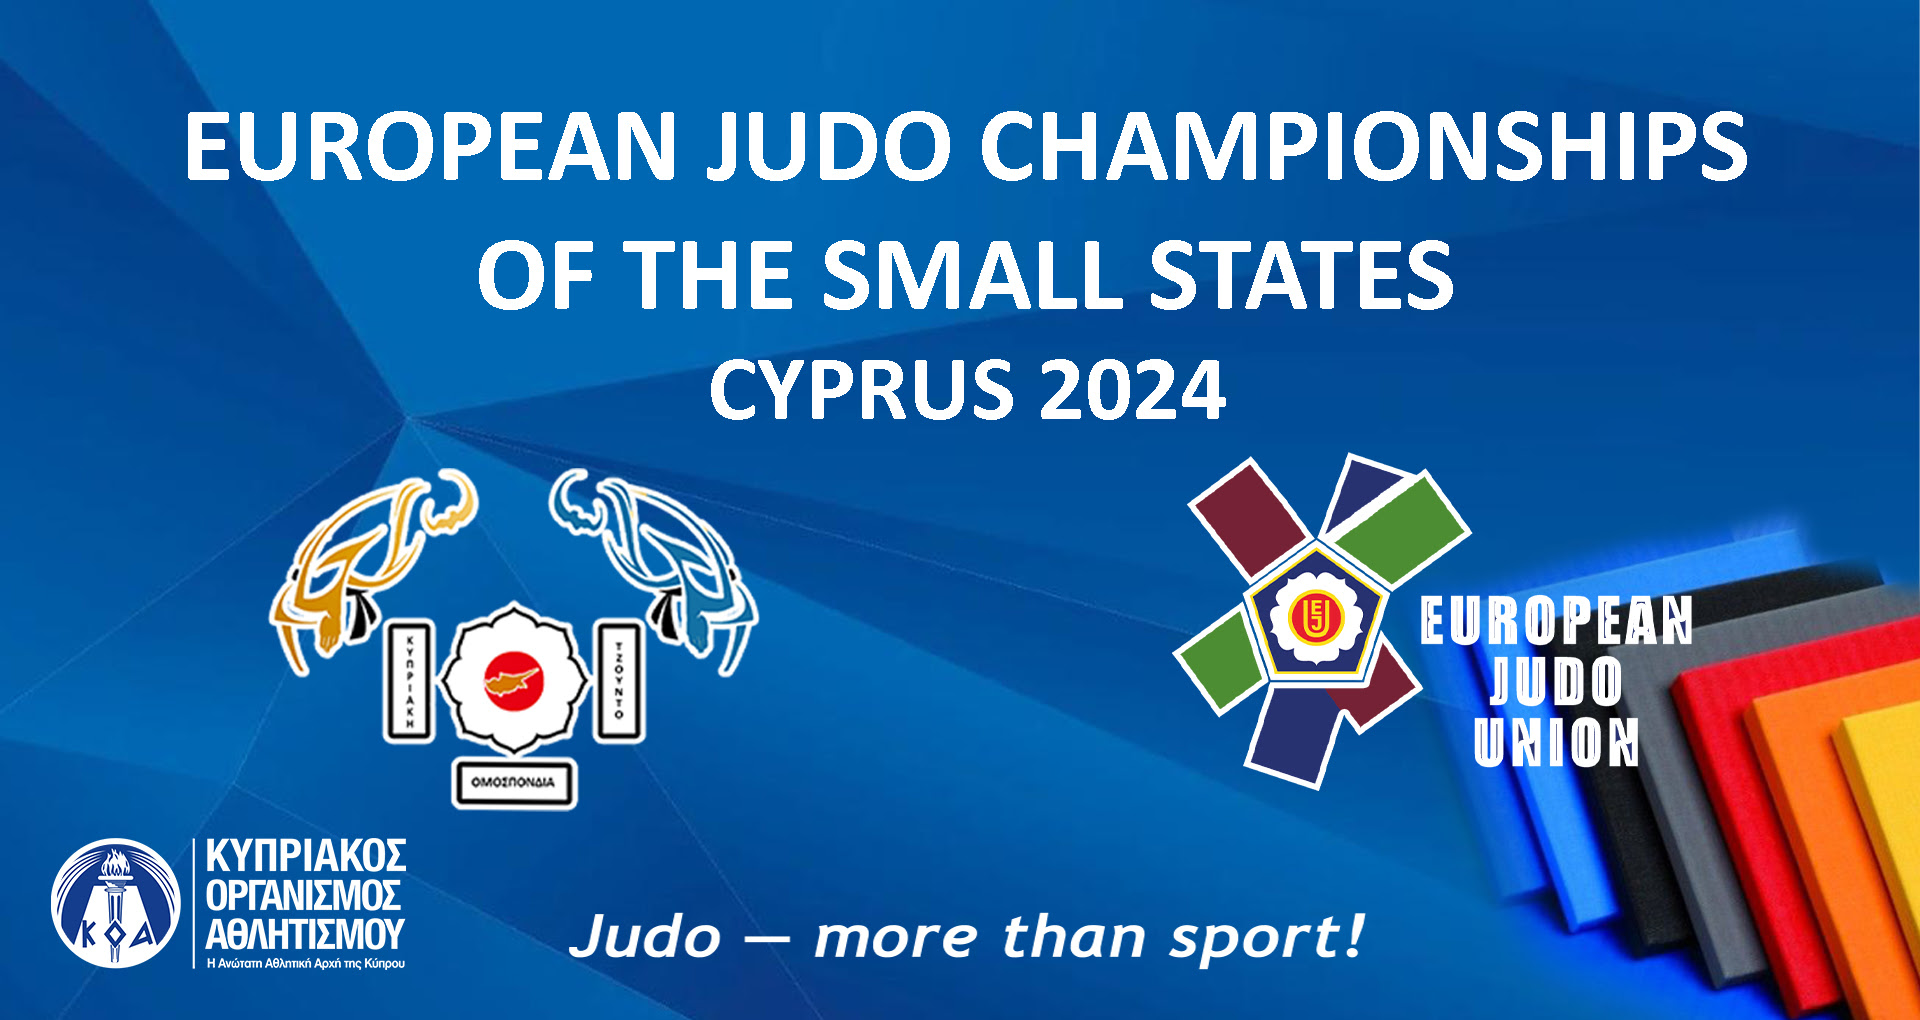 Στρατηγικές επιτυχίες και προοπτικές εν αναμονή του Πανευρωπαϊκού Πρωταθλήματος Μικρών Κρατών 2024 στην Κύπρο